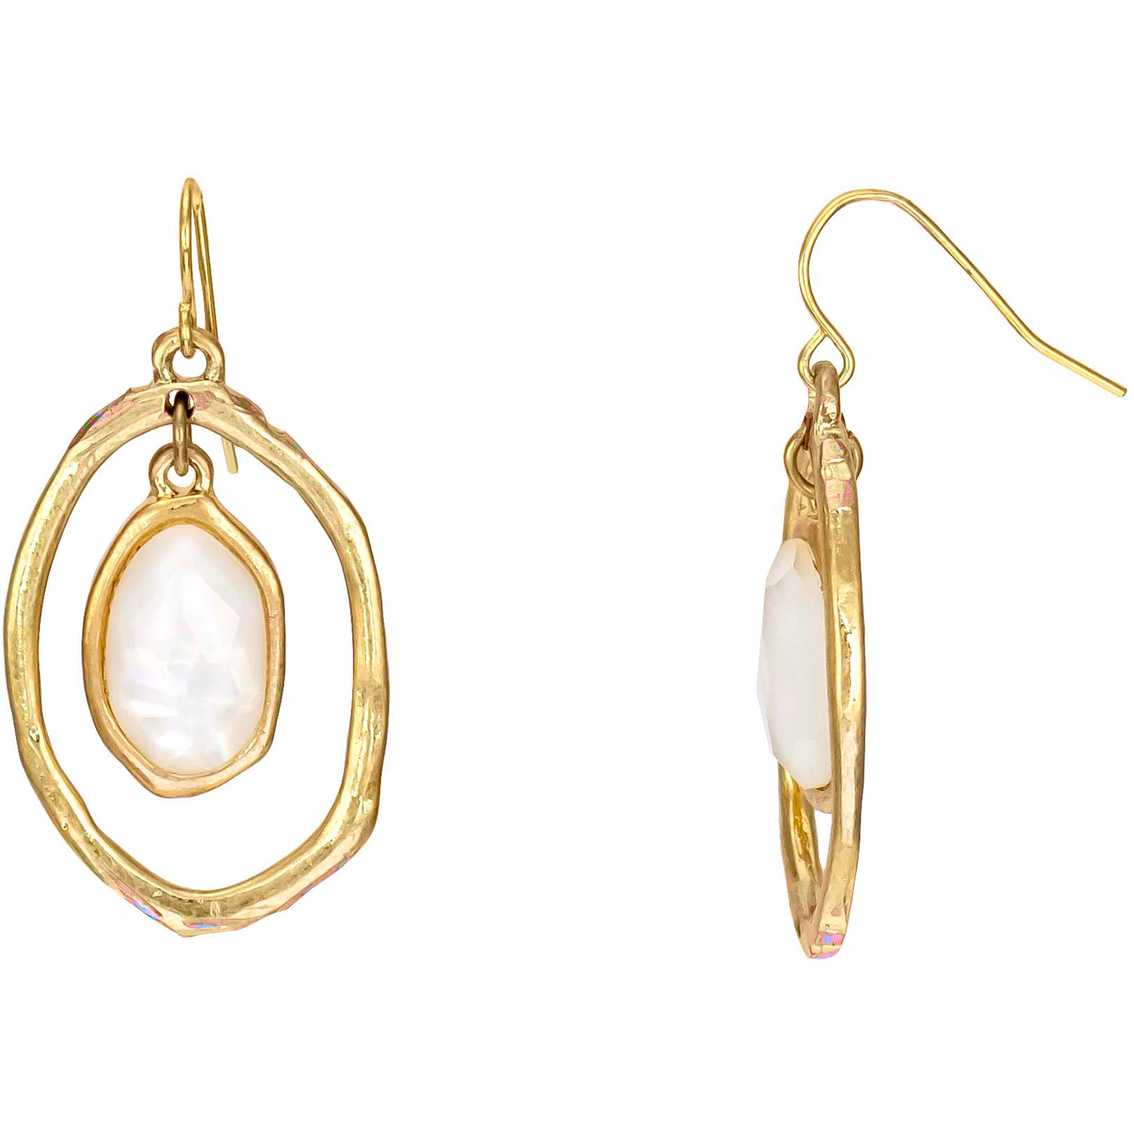 Carol Dauplaise Goldtone Orbital Drop Earrings | Fashion Earrings ...